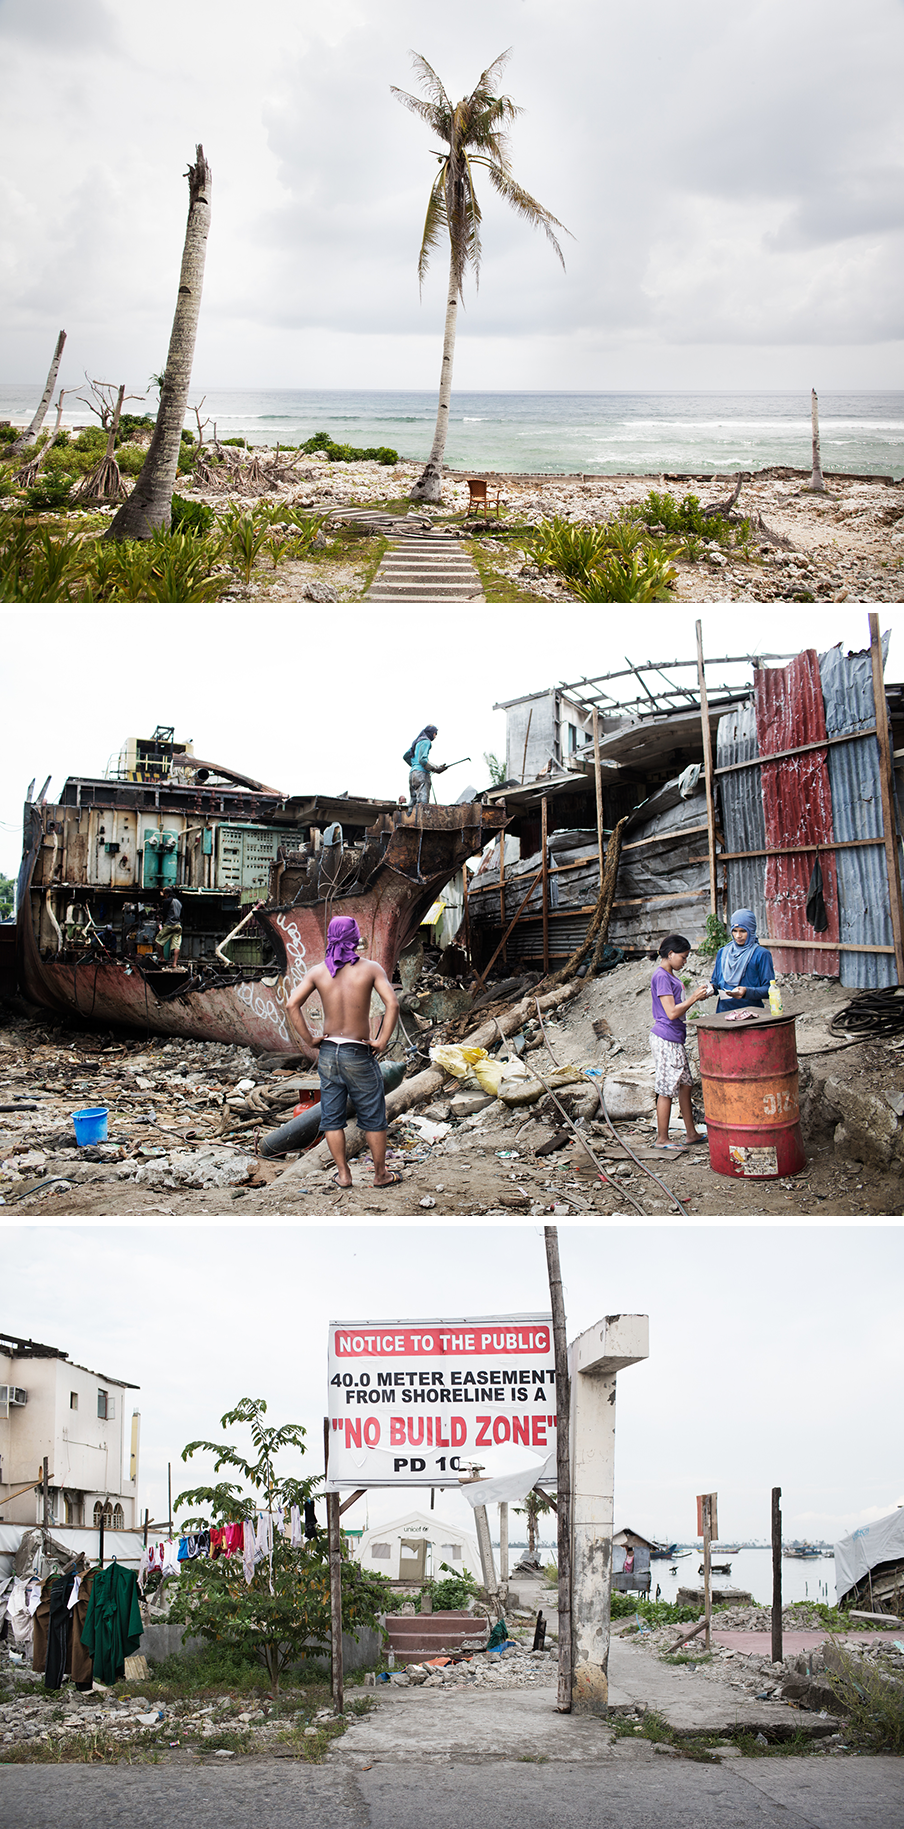 Boven: De overblijfselen van een surfresort in Sulangan. Midden: Een aangespoeld vrachtschip wordt gesloopt in het Anibongdistrict. Onder: De no-build zone wordt gepropageerd. Foto’s: Pieter van den Boogert